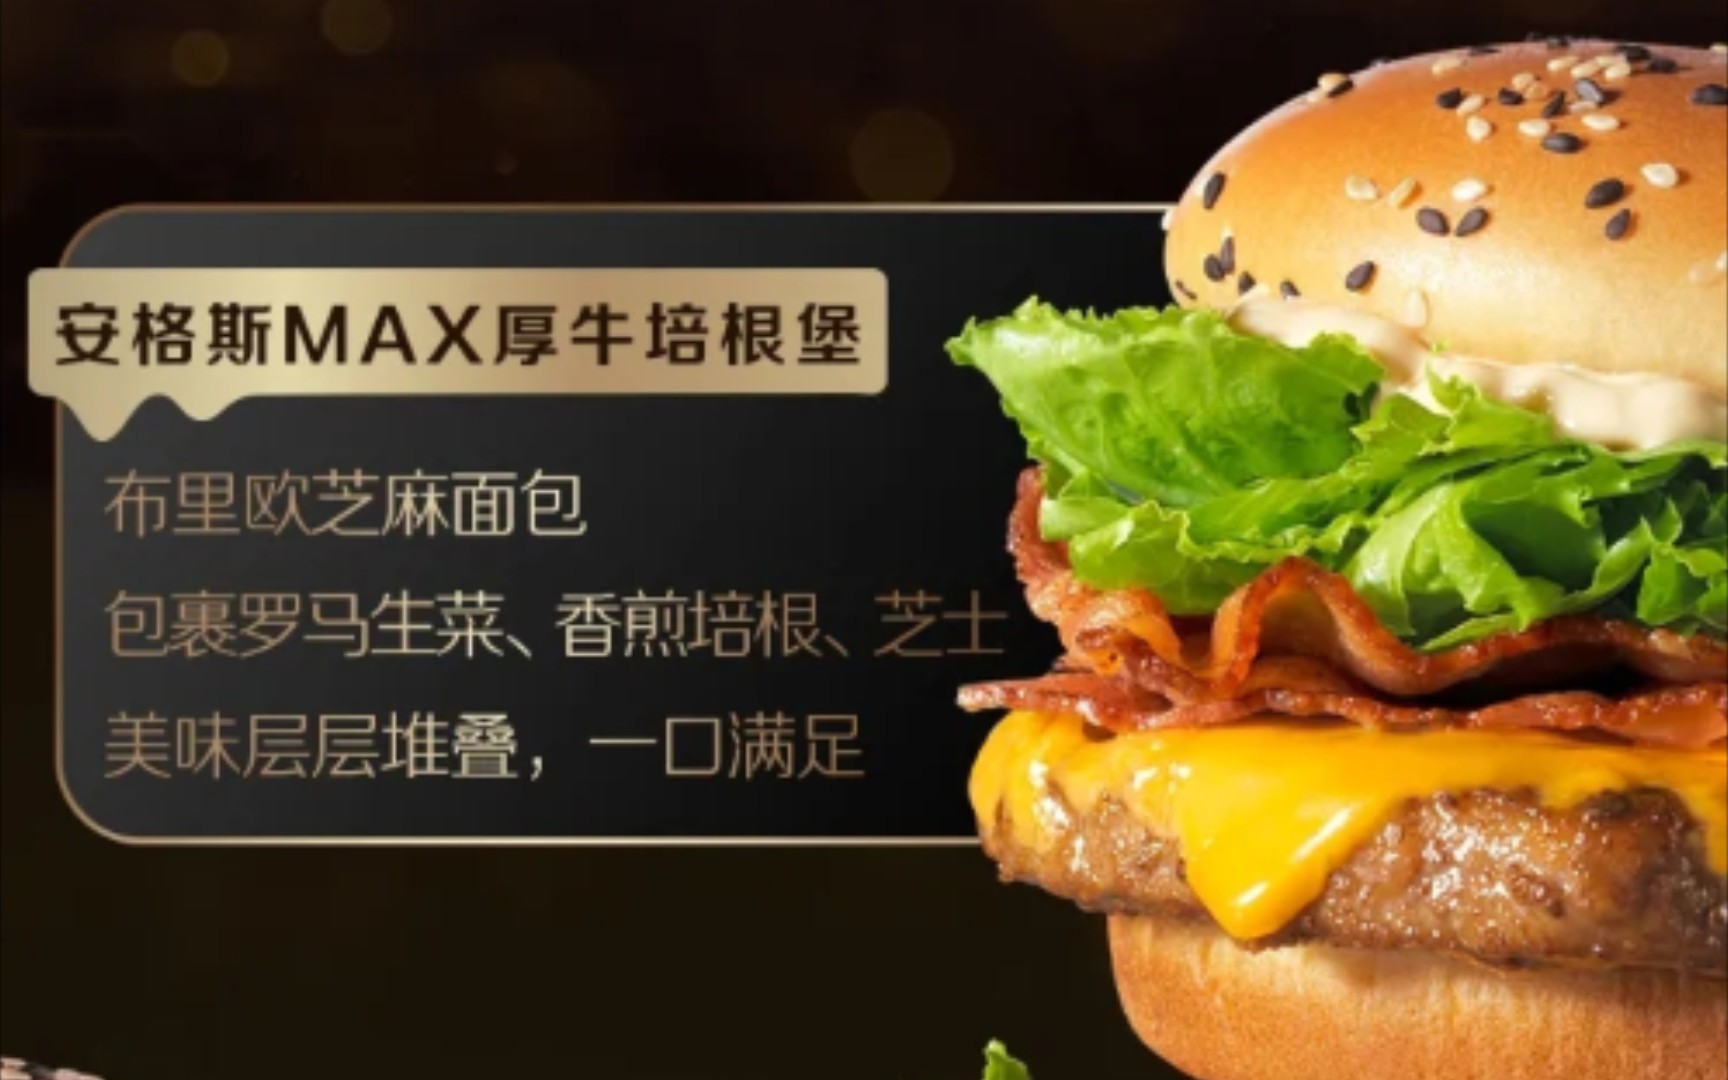 麦当劳新品用券0元享的安格斯max厚牛培根堡